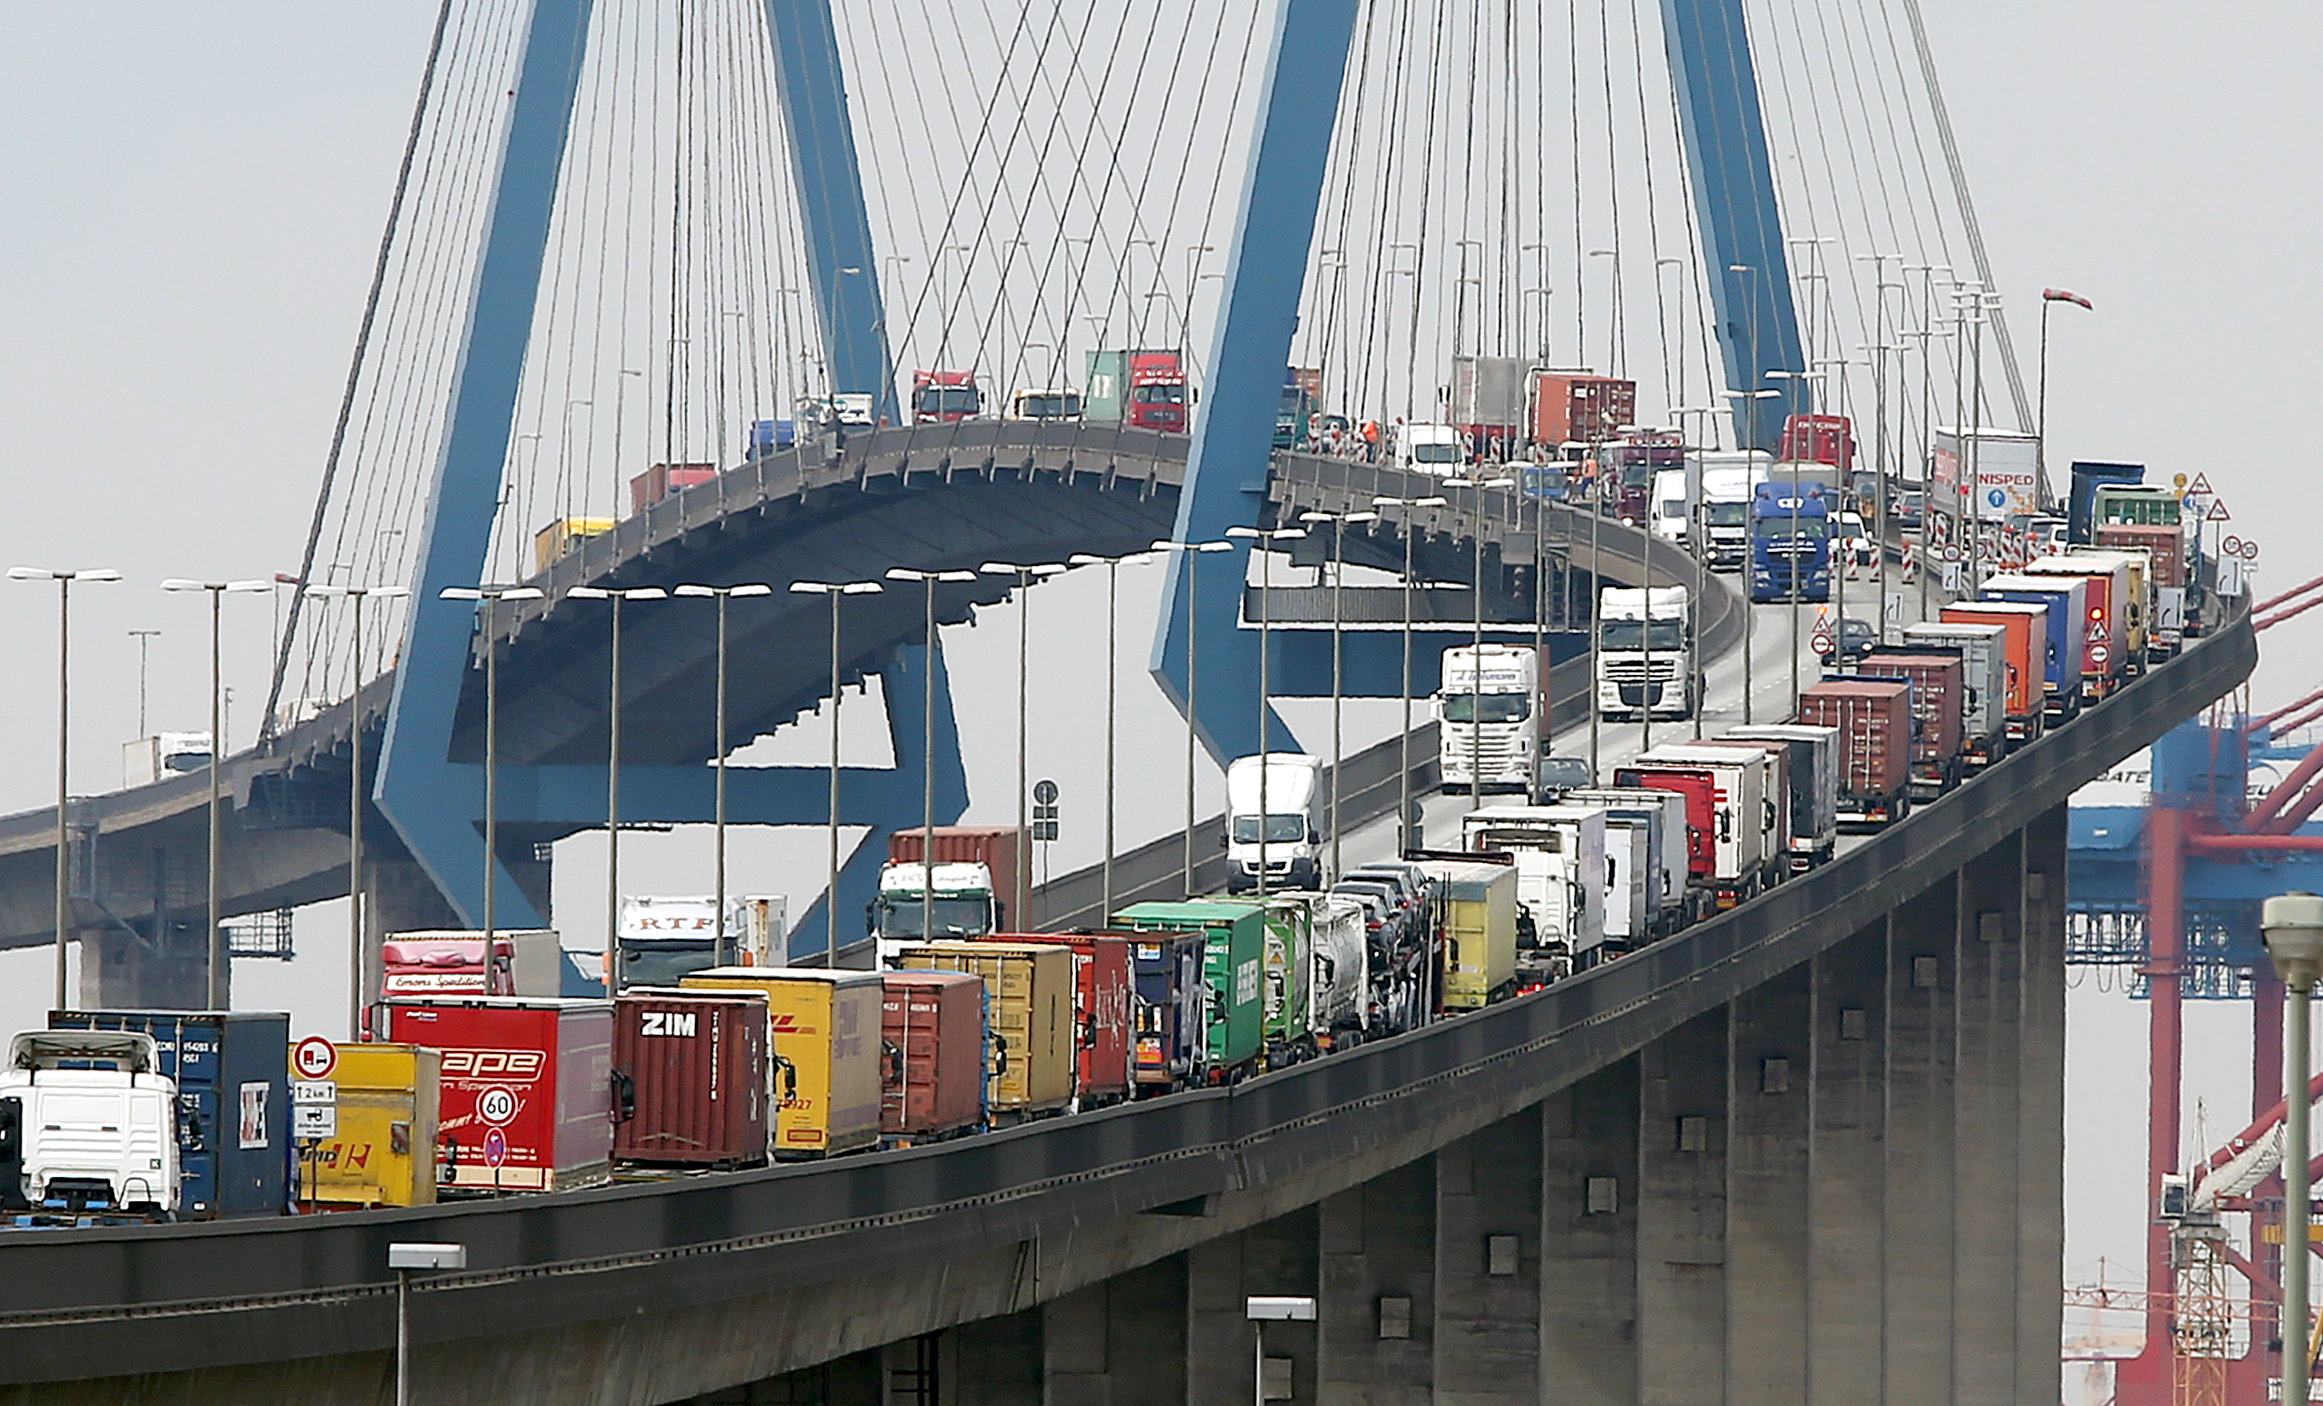 Sperrung der Köhlbrandbrücke: Container-LKW stauen sich auf der Köhlbrandbrücke im Hamburger Hafen.